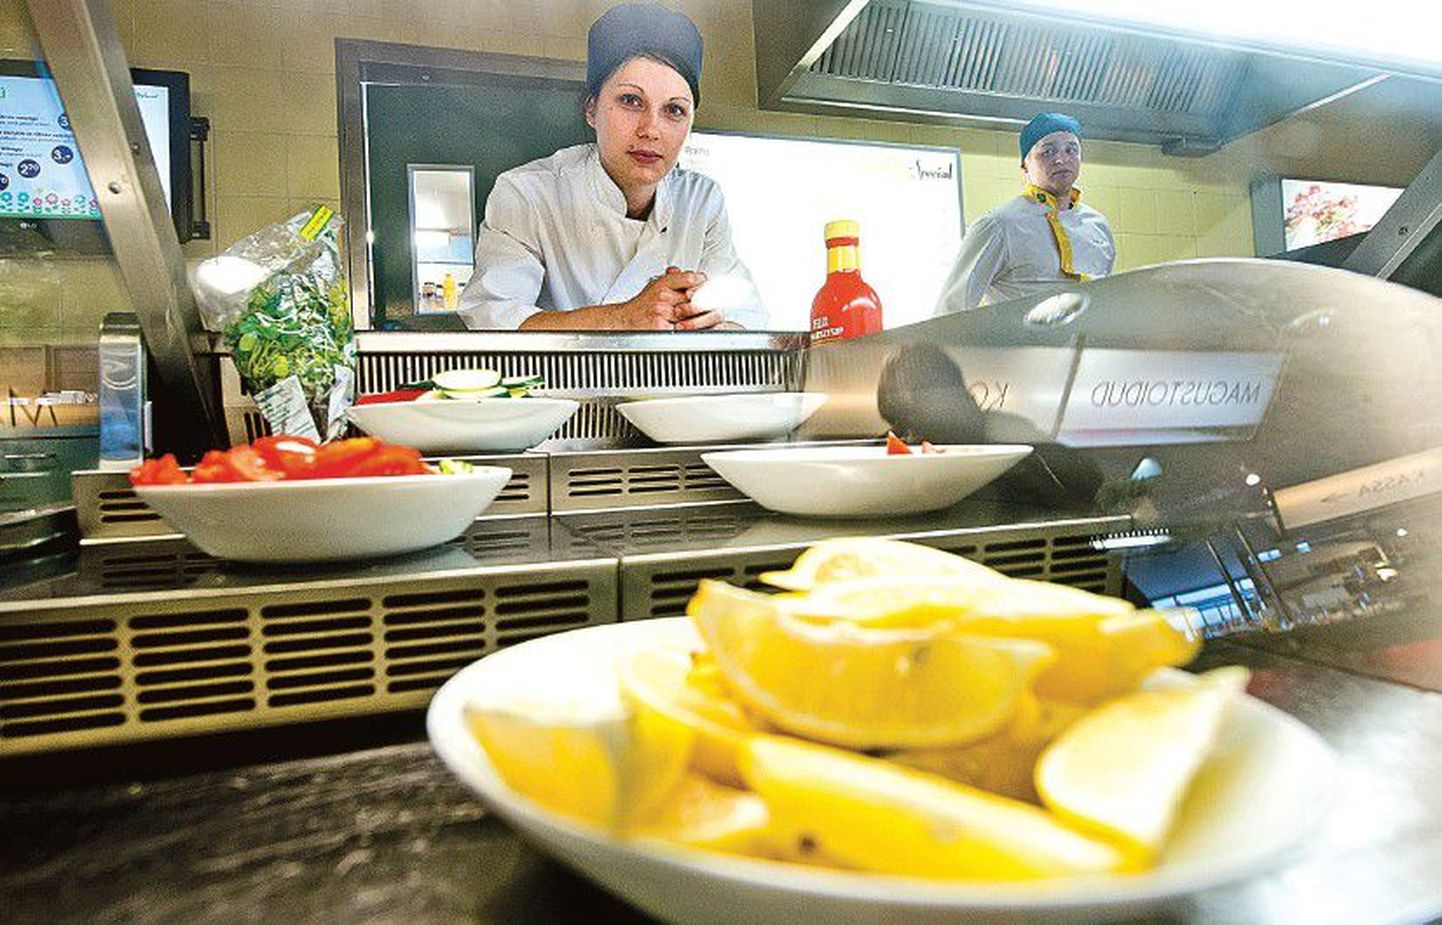 По словам Анники Лустин, которая работает поваром гриля в фирме Baltic Restaurants в столичном универмаге Stockmann, несколько ее коллег ушли с работы, потому что перебрались за границу.